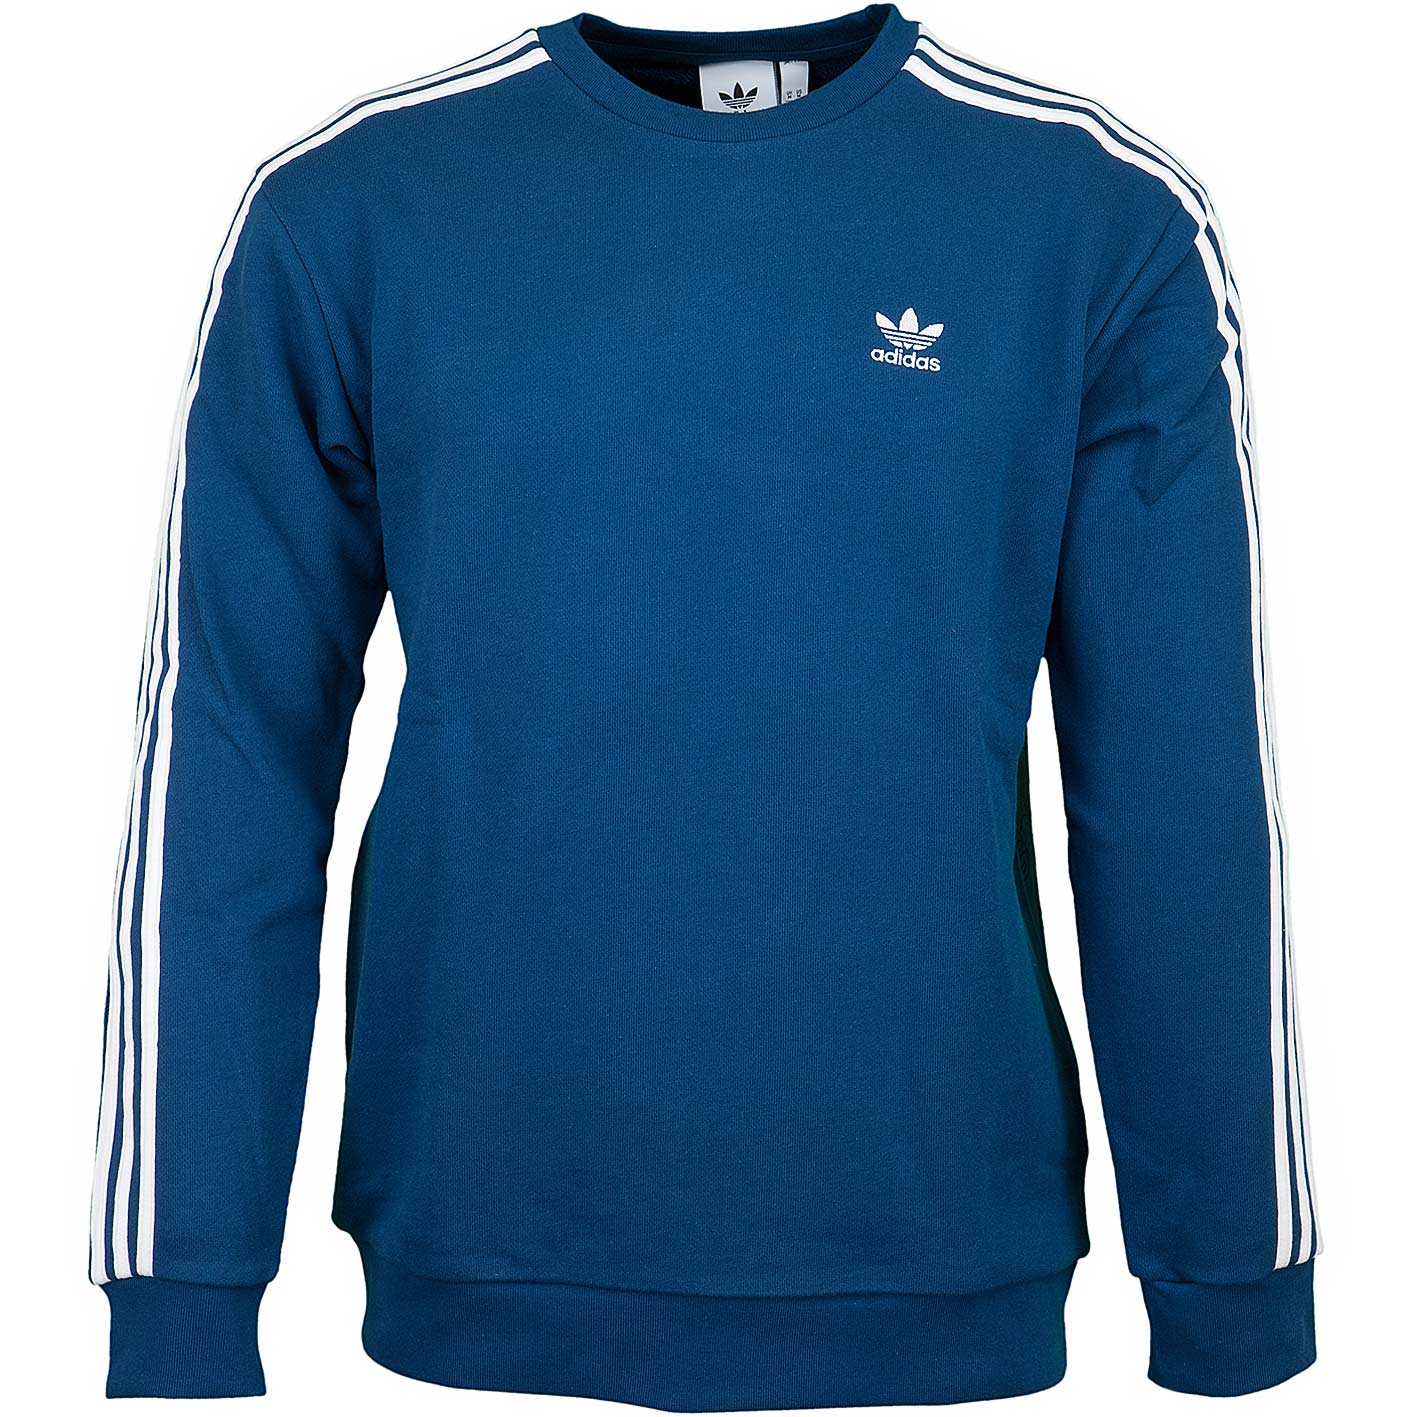 Adidas Originals Sweatshirt Mono blau - hier bestellen!